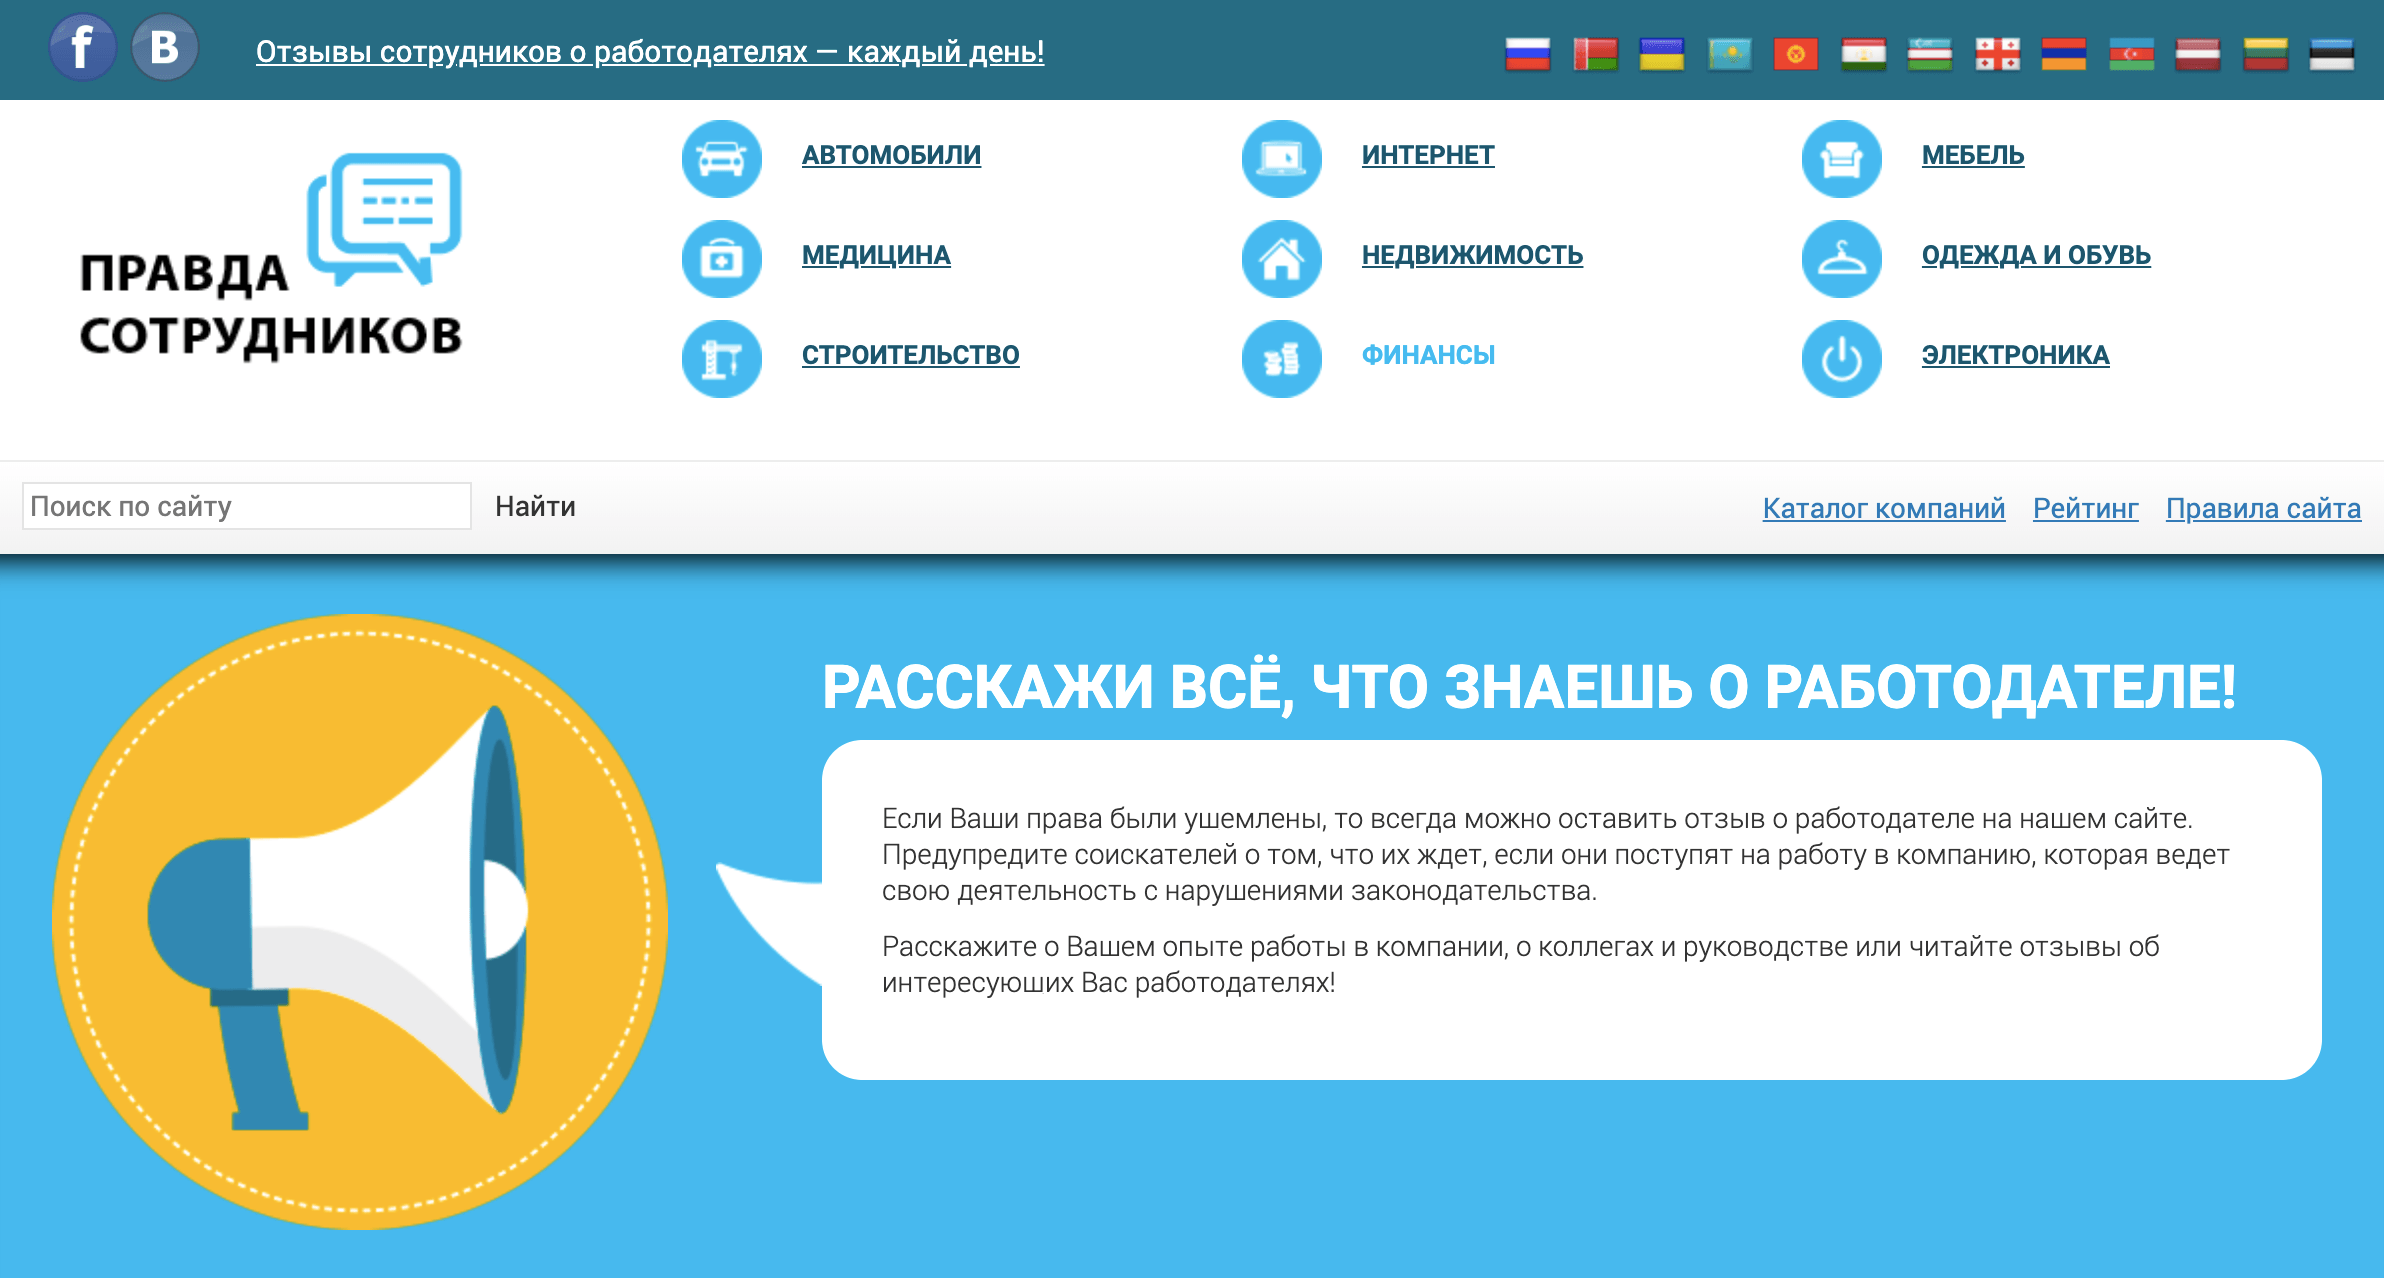 В интернете полно сайтов с отзывами о работе в различных компаниях. Забейте в поиске фразу «название компании отзывы» или зайдите на специальный сайт, например Pravda-sotrudnikov.ru, Antijob.net или DreamJob.ru, и поищите там отзывы о потенциальном работодателе